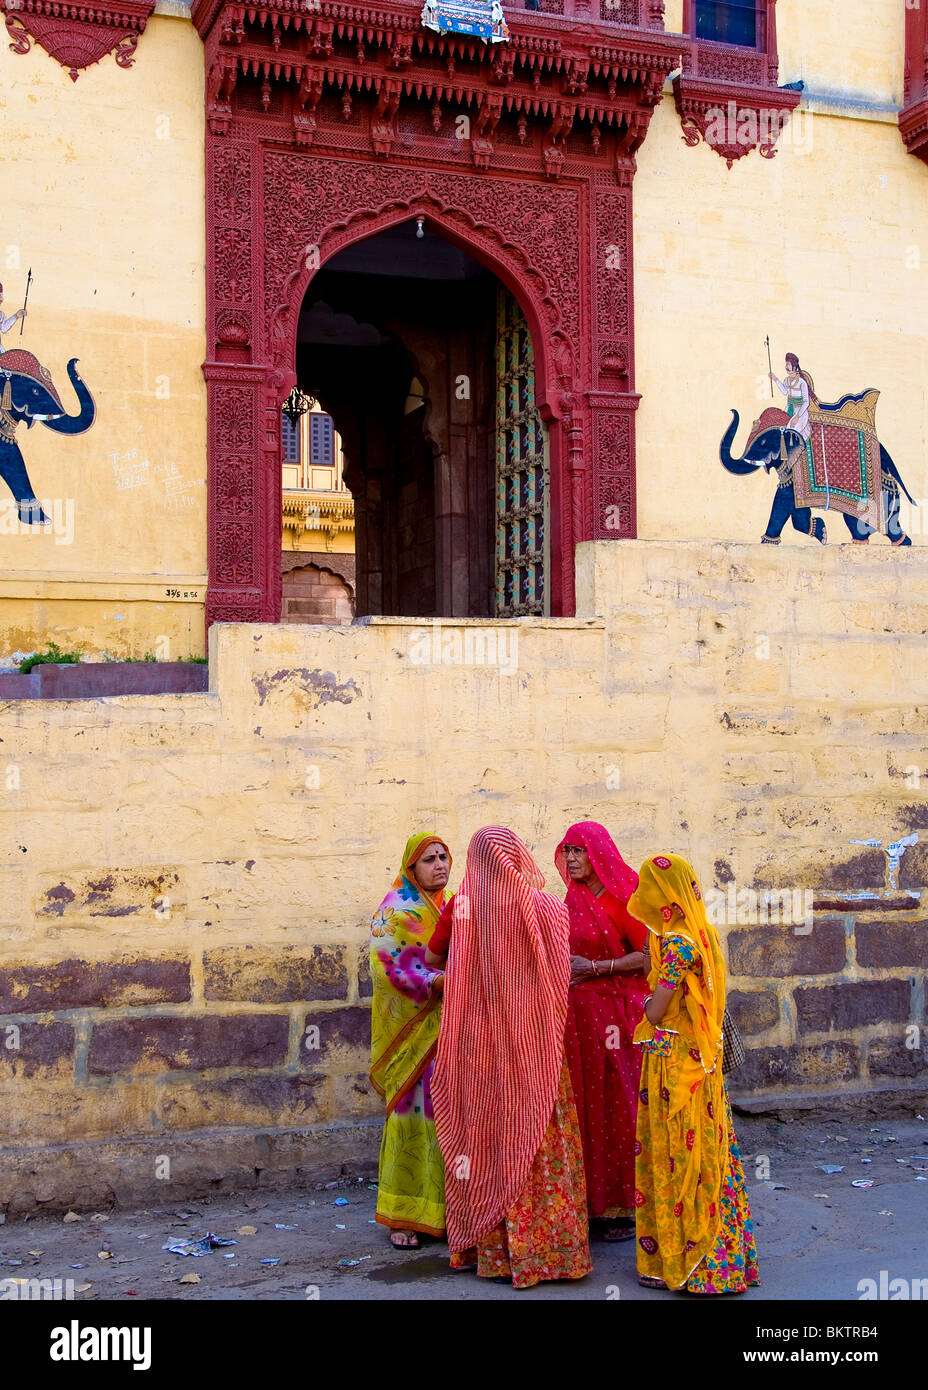 Women wearing saris, Jodphur, Rajasthan, India Stock Photo